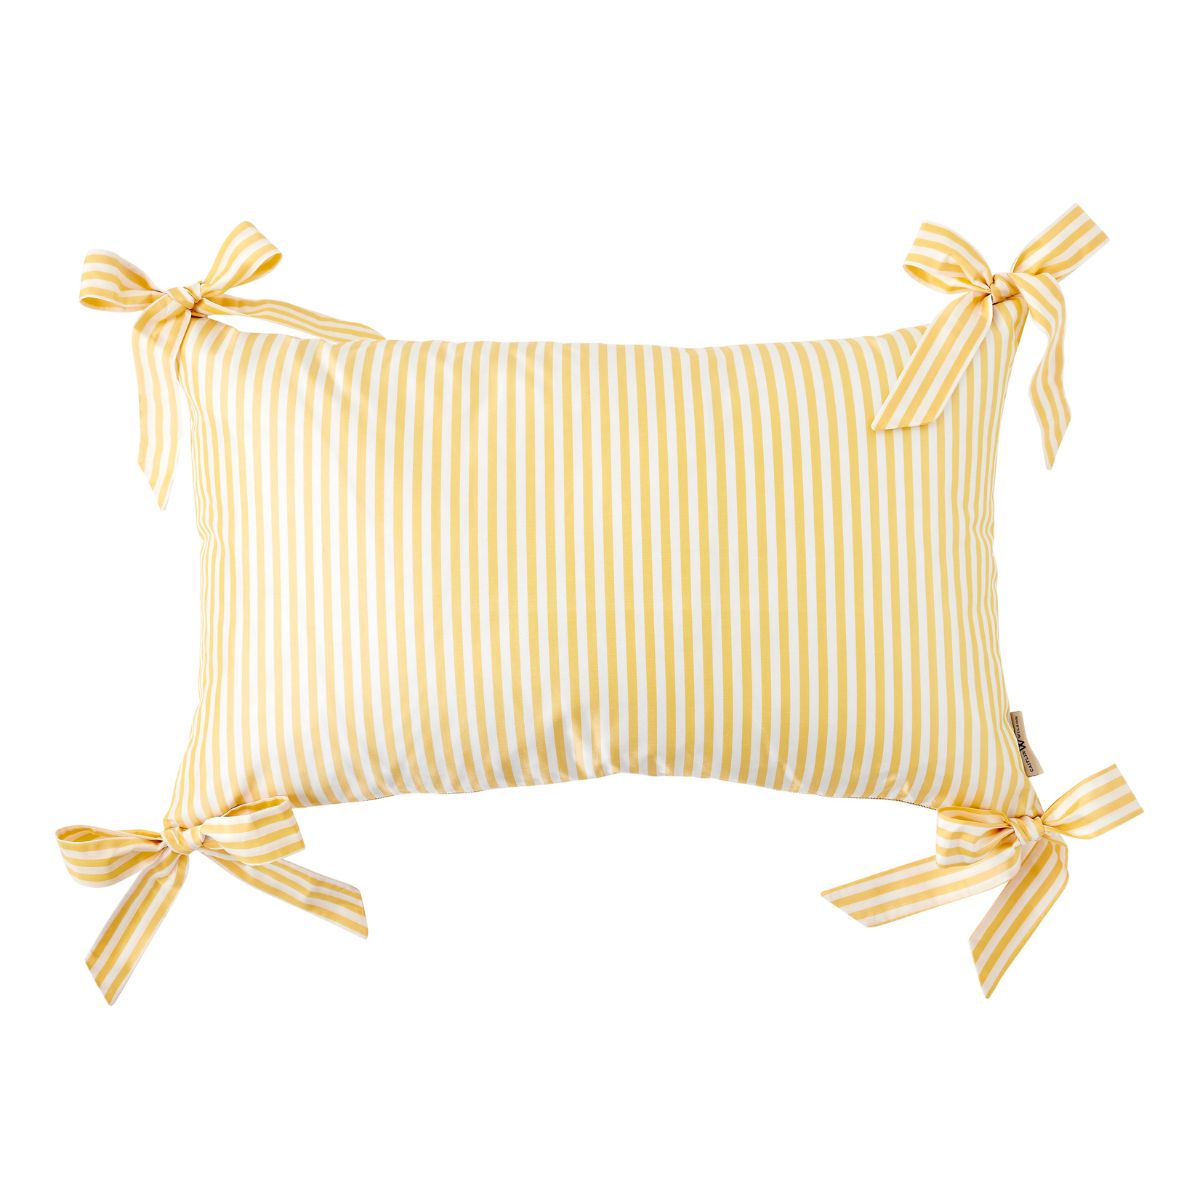 Noelle Bow Pillow in Lemon